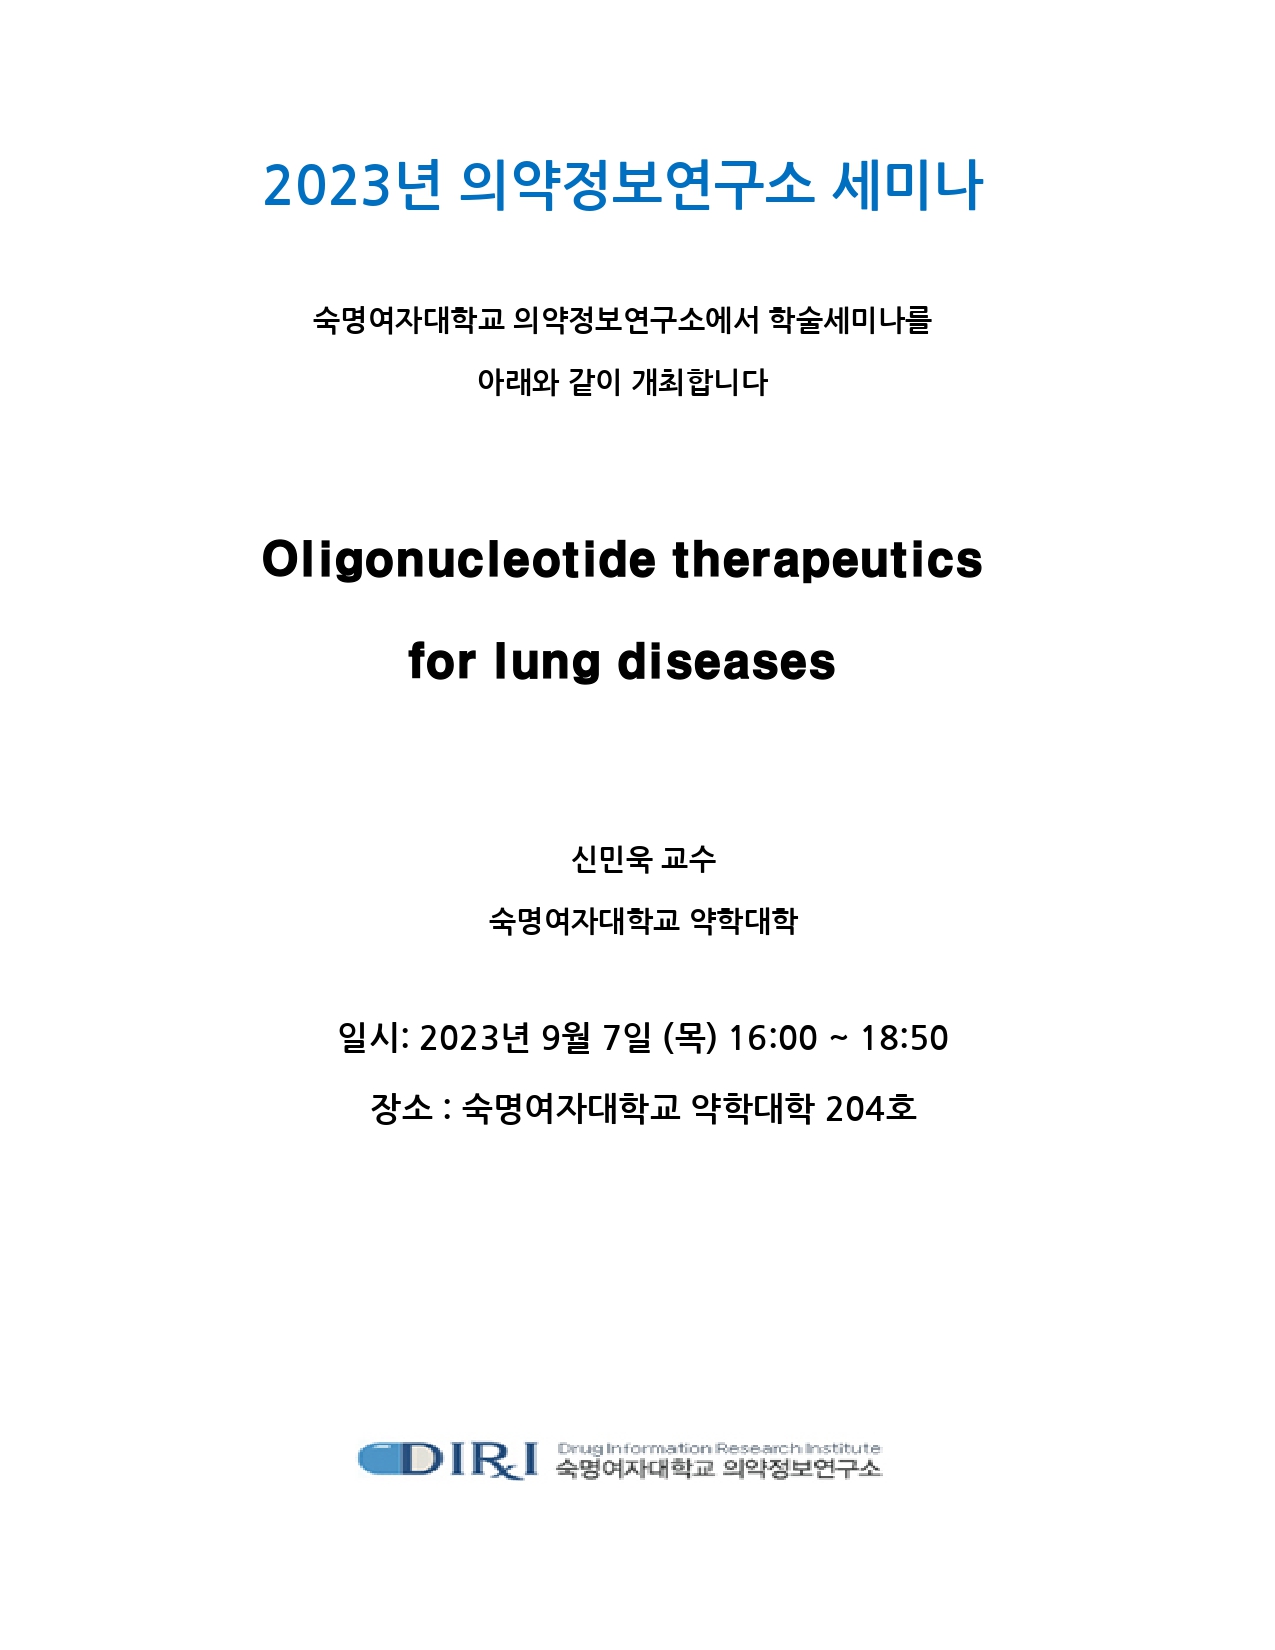 [의약정보연구소] 신민욱 교수님 세미나 개최 : Oligonucleotide therapeutics for lung diseases 첨부 이미지